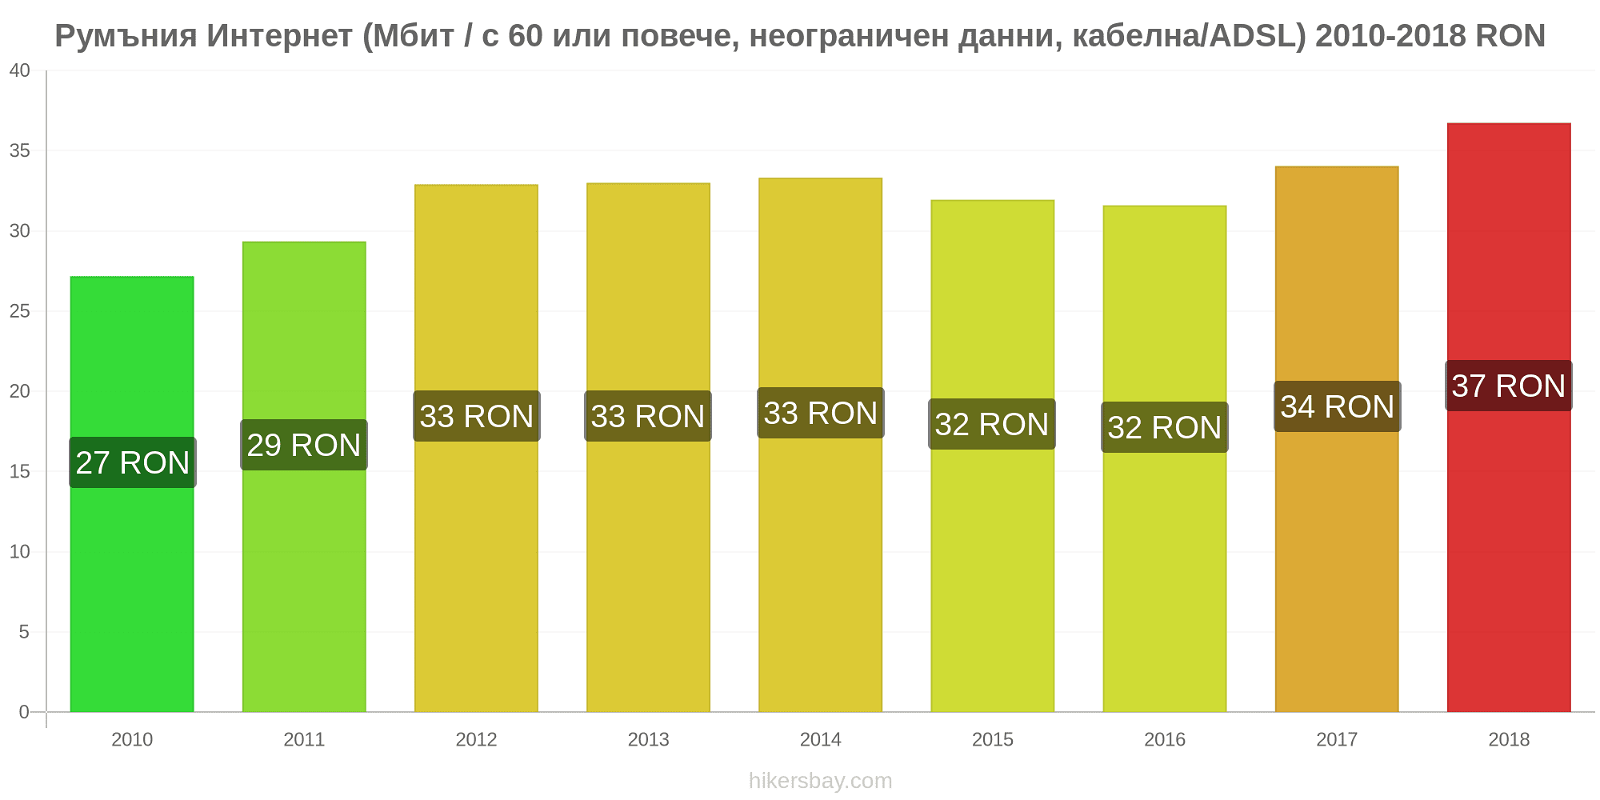 Румъния промени в цените Интернет (60 Mbps или повече, неограничени данни, кабел/ADSL) hikersbay.com